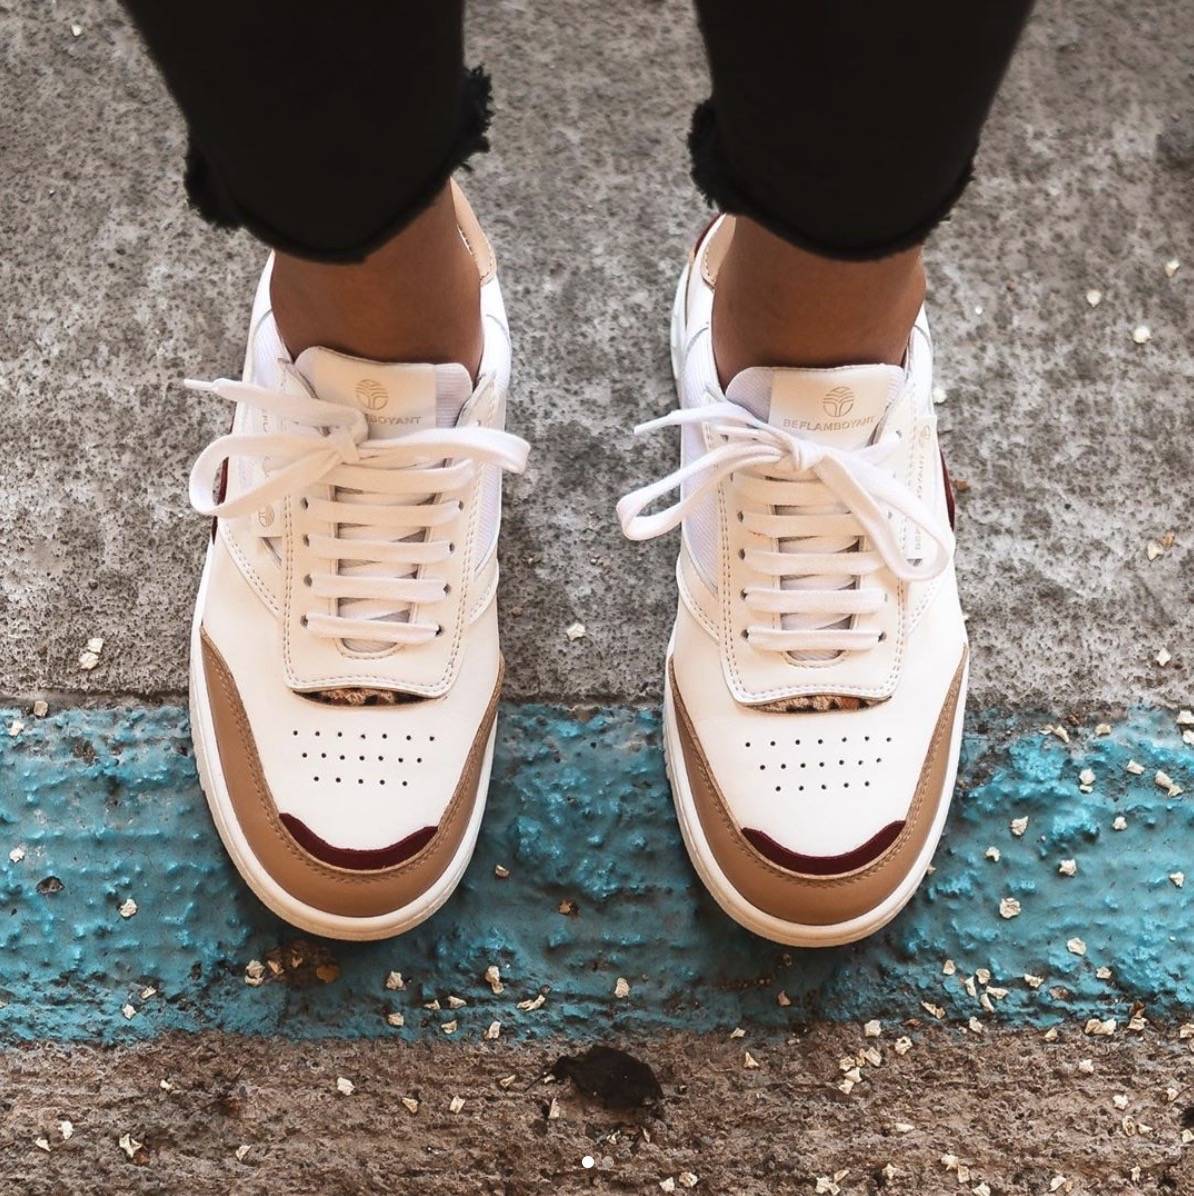 Snor ik draag kleding Onbeleefd 7x Onze Favoriete Duurzame Sneakers voor Mannen | Blog Duurzame Kleding |  Project Cece